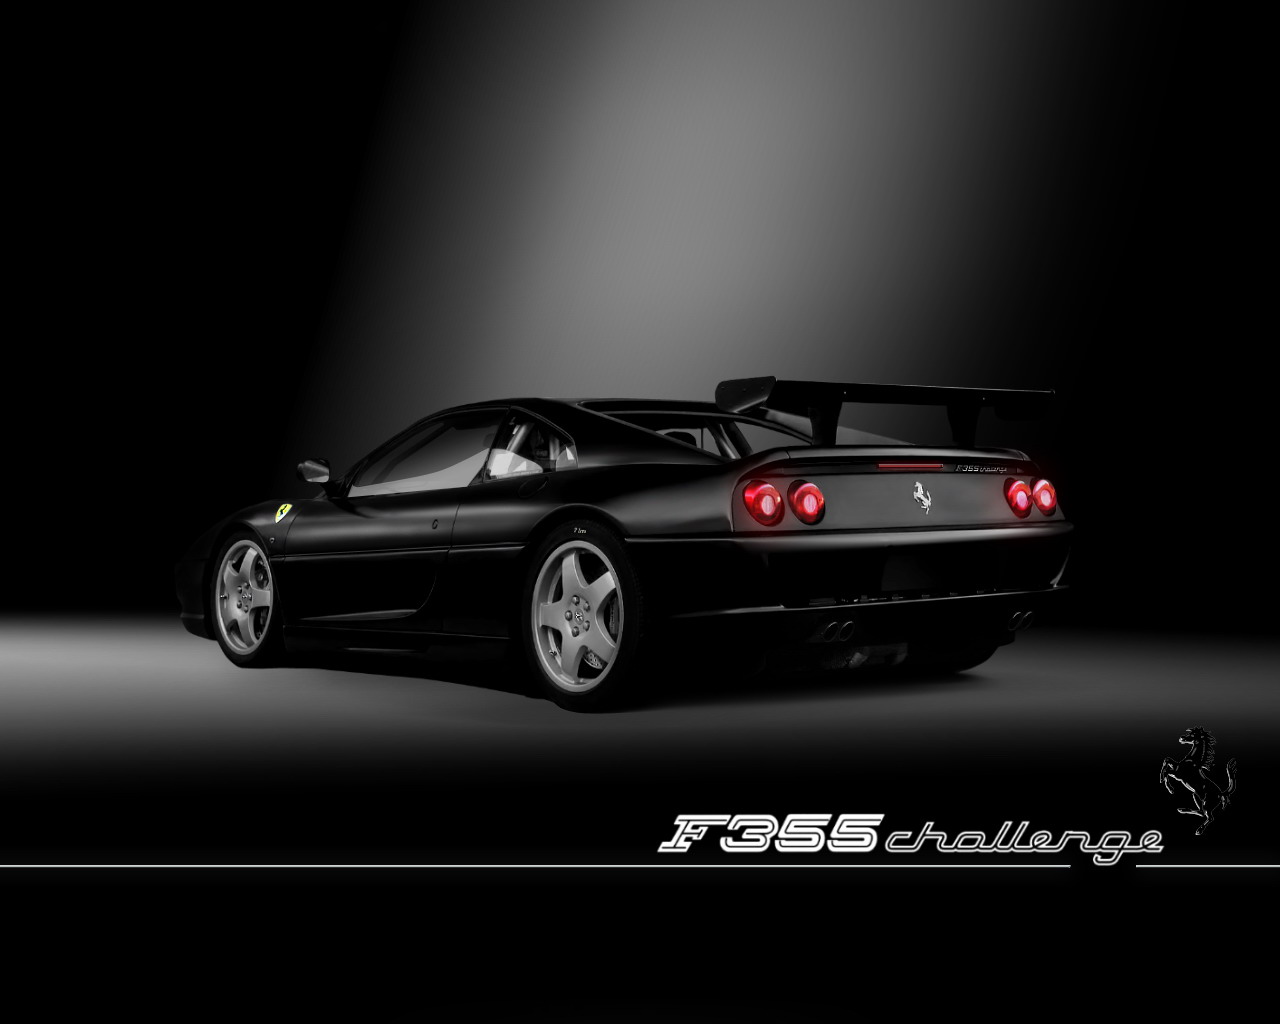 Black Ferrari F355 Wallpaper Full HD Pictures 1280x1024